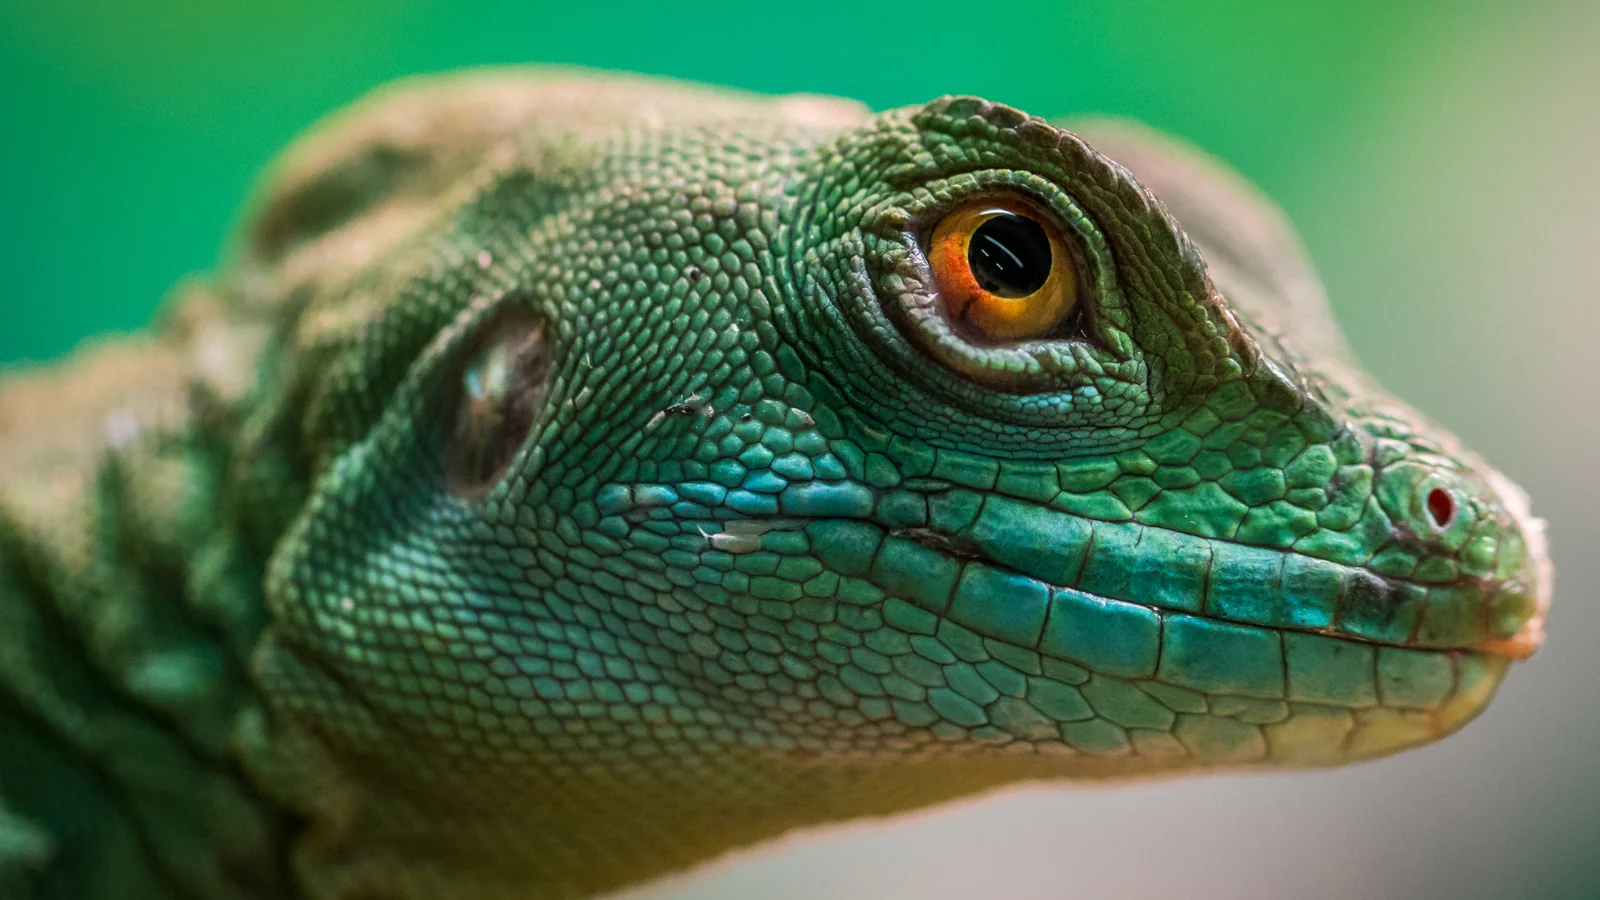 lizard up close eye, conservation